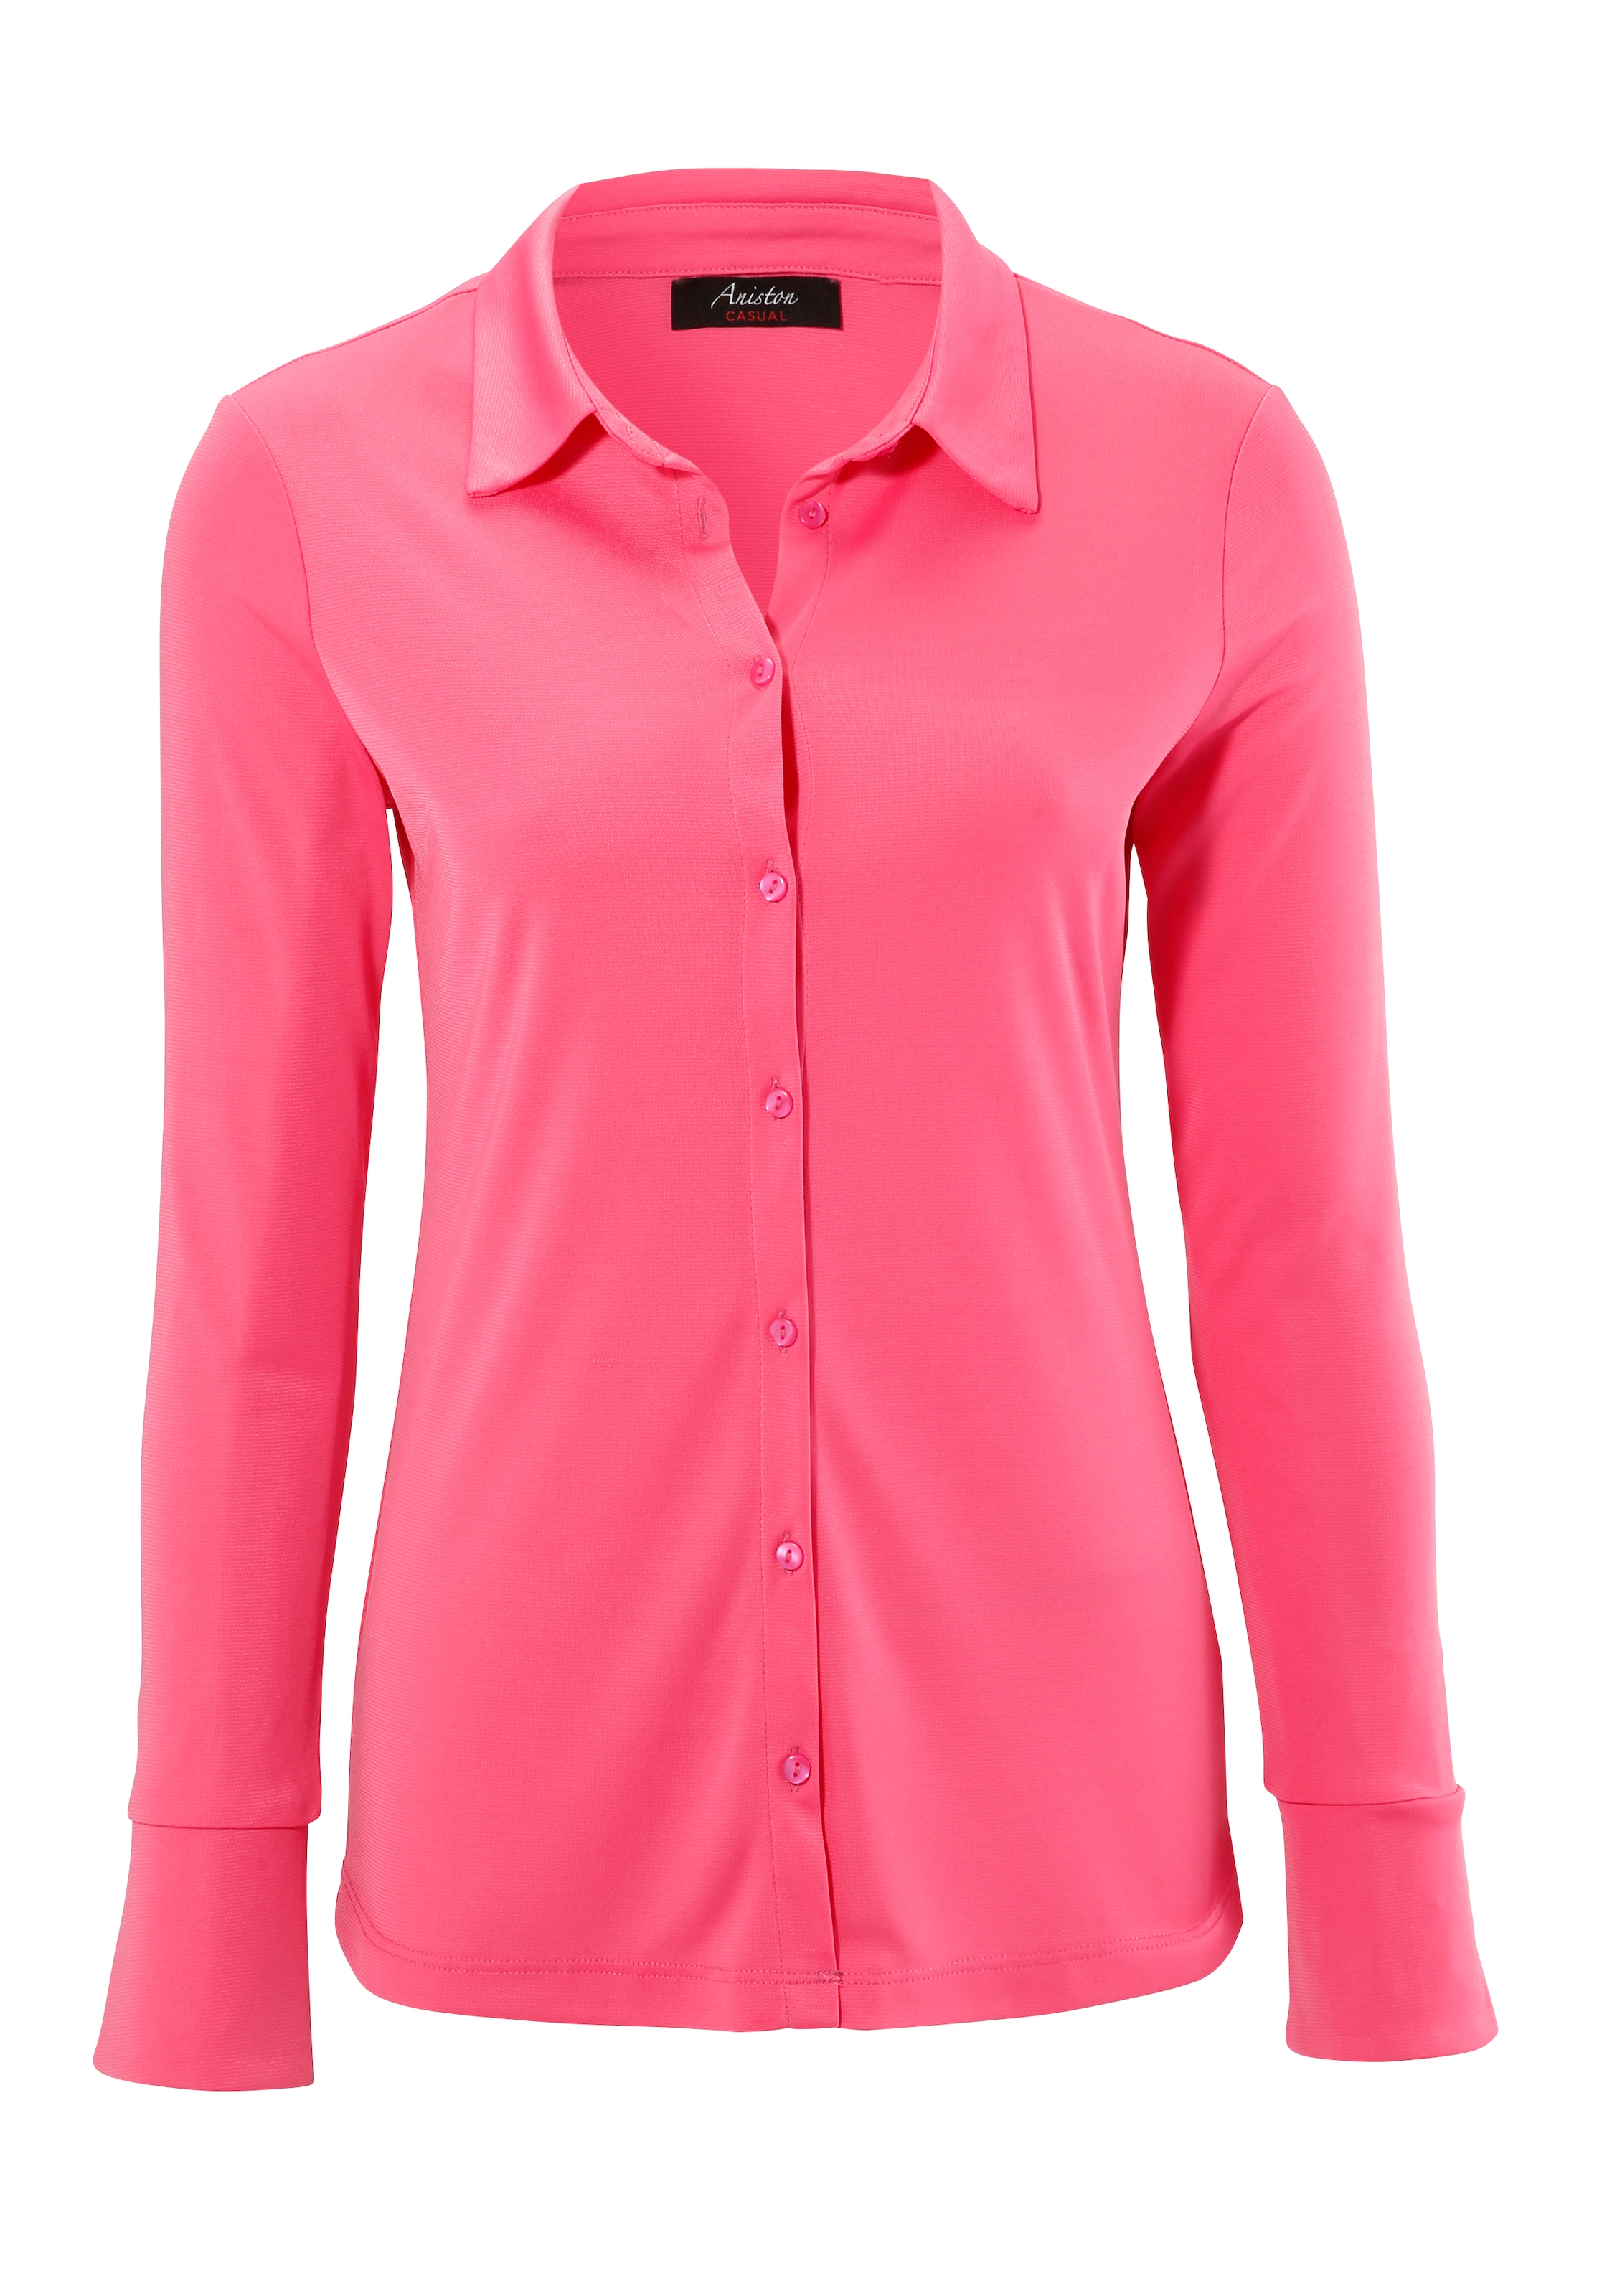 Aniston CASUAL Hemdbluse, in bei Jersey-Crepé-Qualität ♕ strukturierter